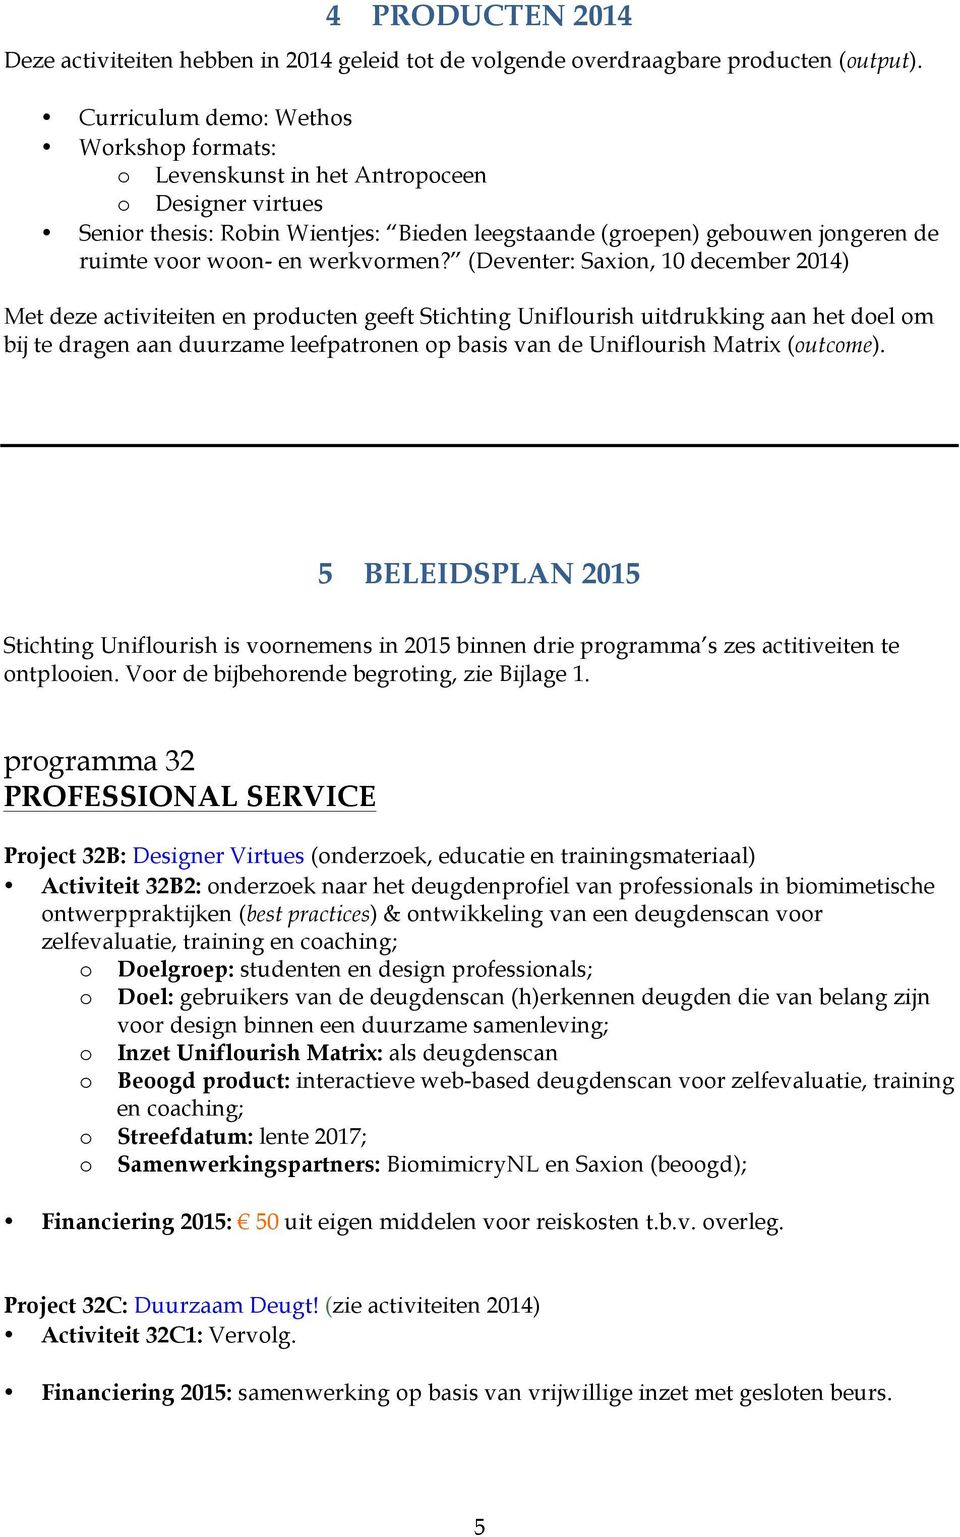 (Deventer: Saxin, 10 december 2014) Met deze activiteiten en prducten geeft Stichting Uniflurish uitdrukking aan het del m bij te dragen aan duurzame leefpatrnen p basis van de Uniflurish Matrix